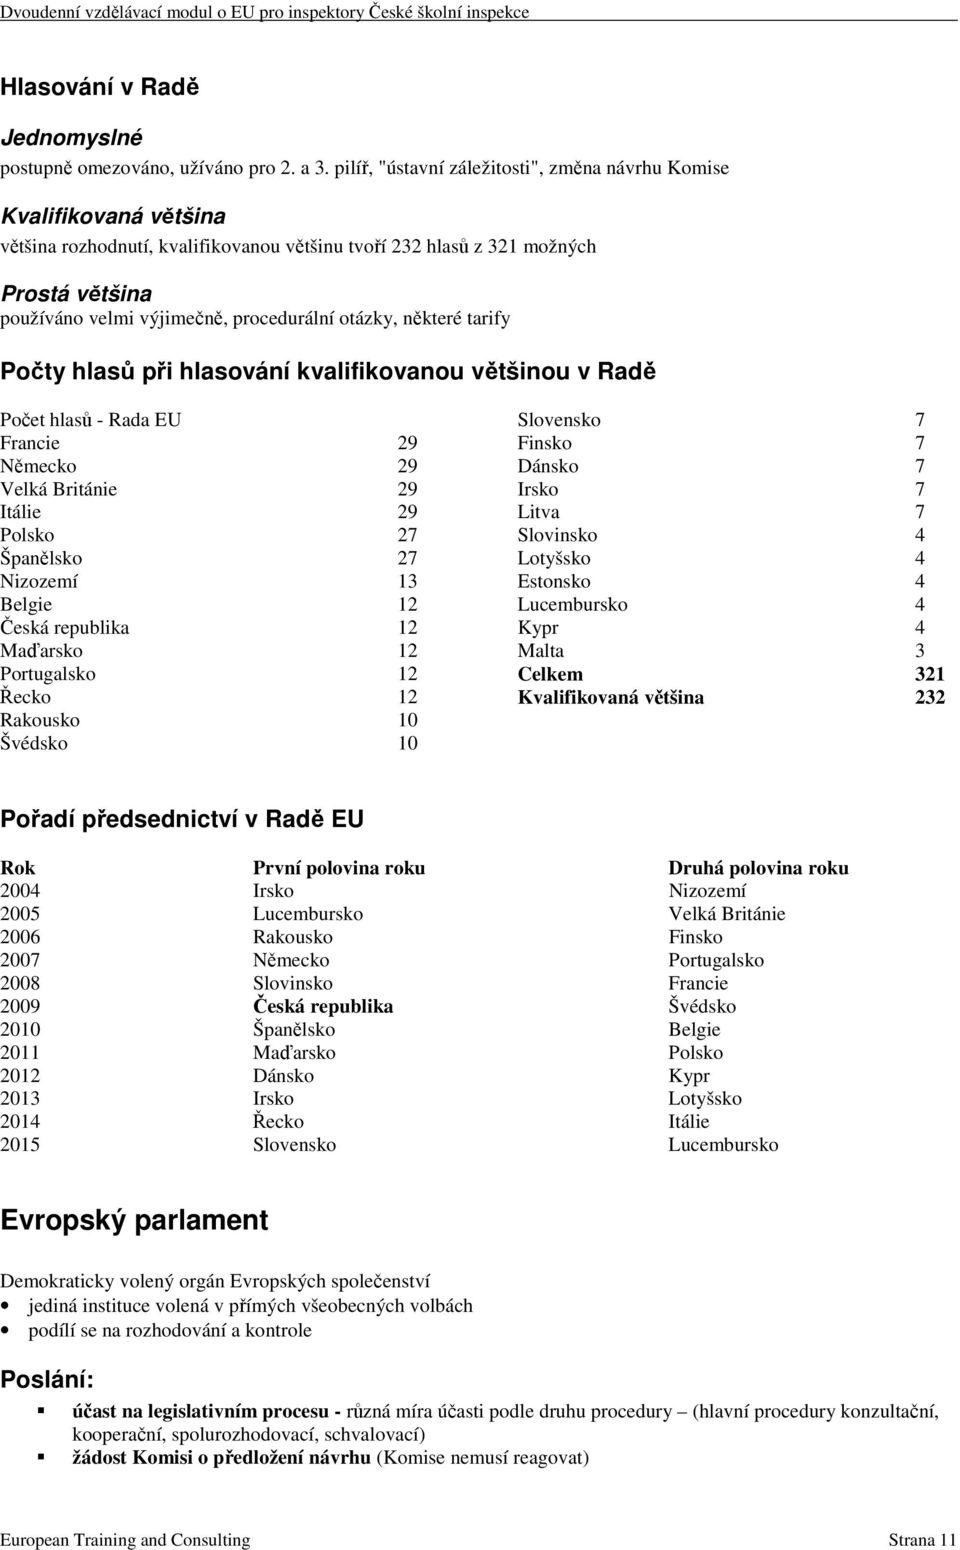 otázky, některé tarify Počty hlasů při hlasování kvalifikovanou většinou v Radě Počet hlasů - Rada EU Francie 29 Německo 29 Velká Británie 29 Itálie 29 Polsko 27 Španělsko 27 Nizozemí 13 Belgie 12